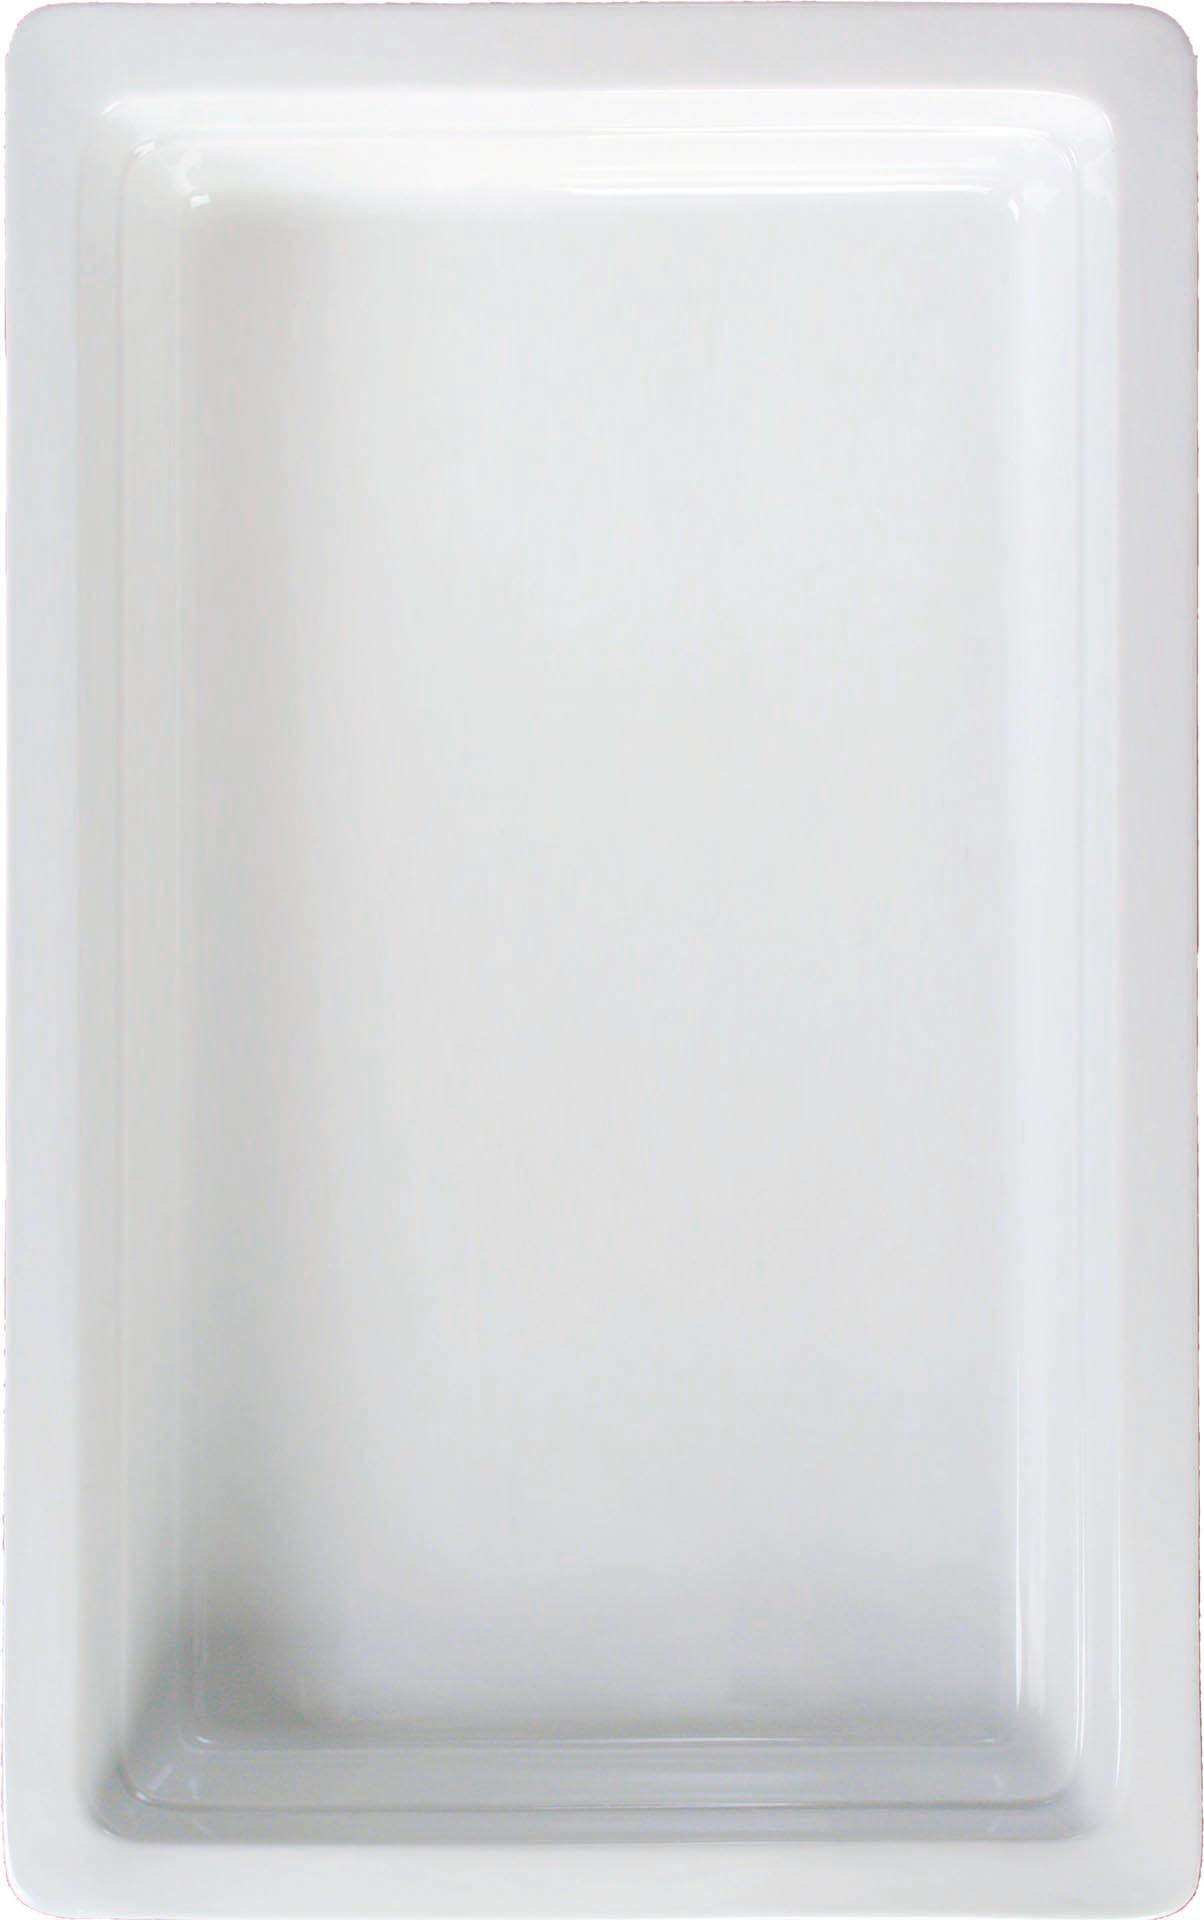 GN-Behälter Porzellan weiss GN 1/3-65 Inhalt: 1,8 Liter